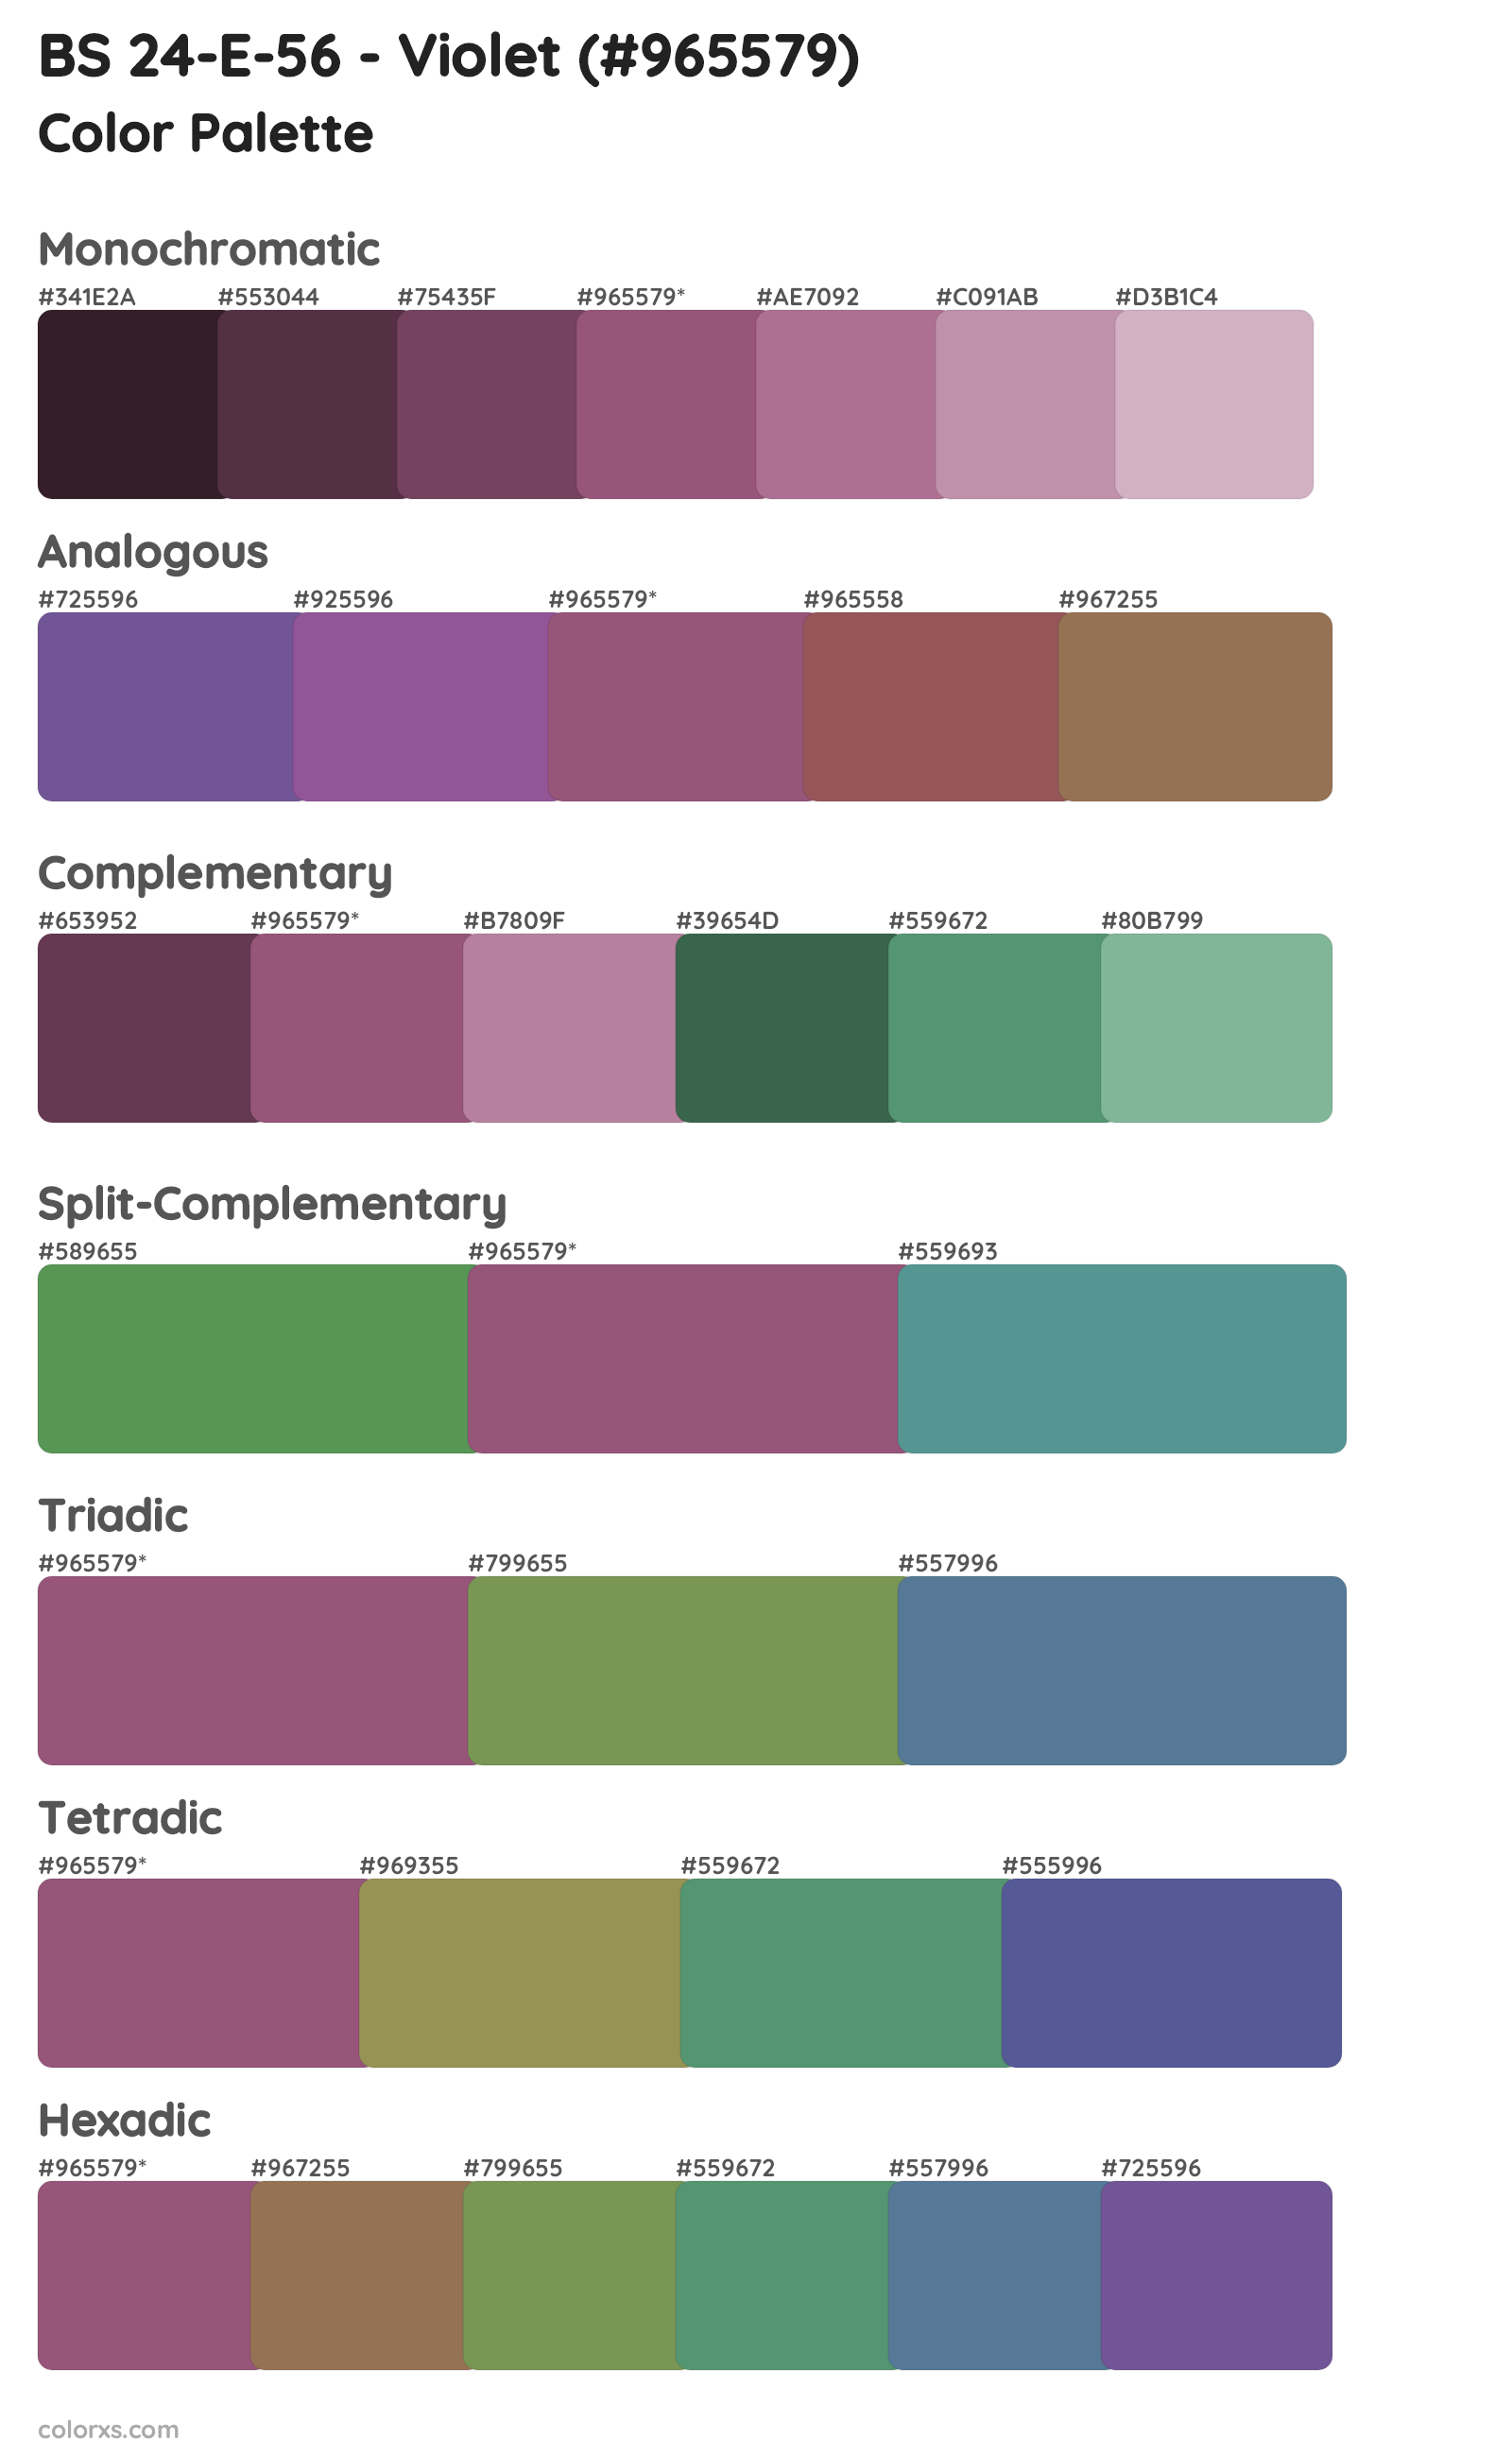 BS 24-E-56 - Violet Color Scheme Palettes